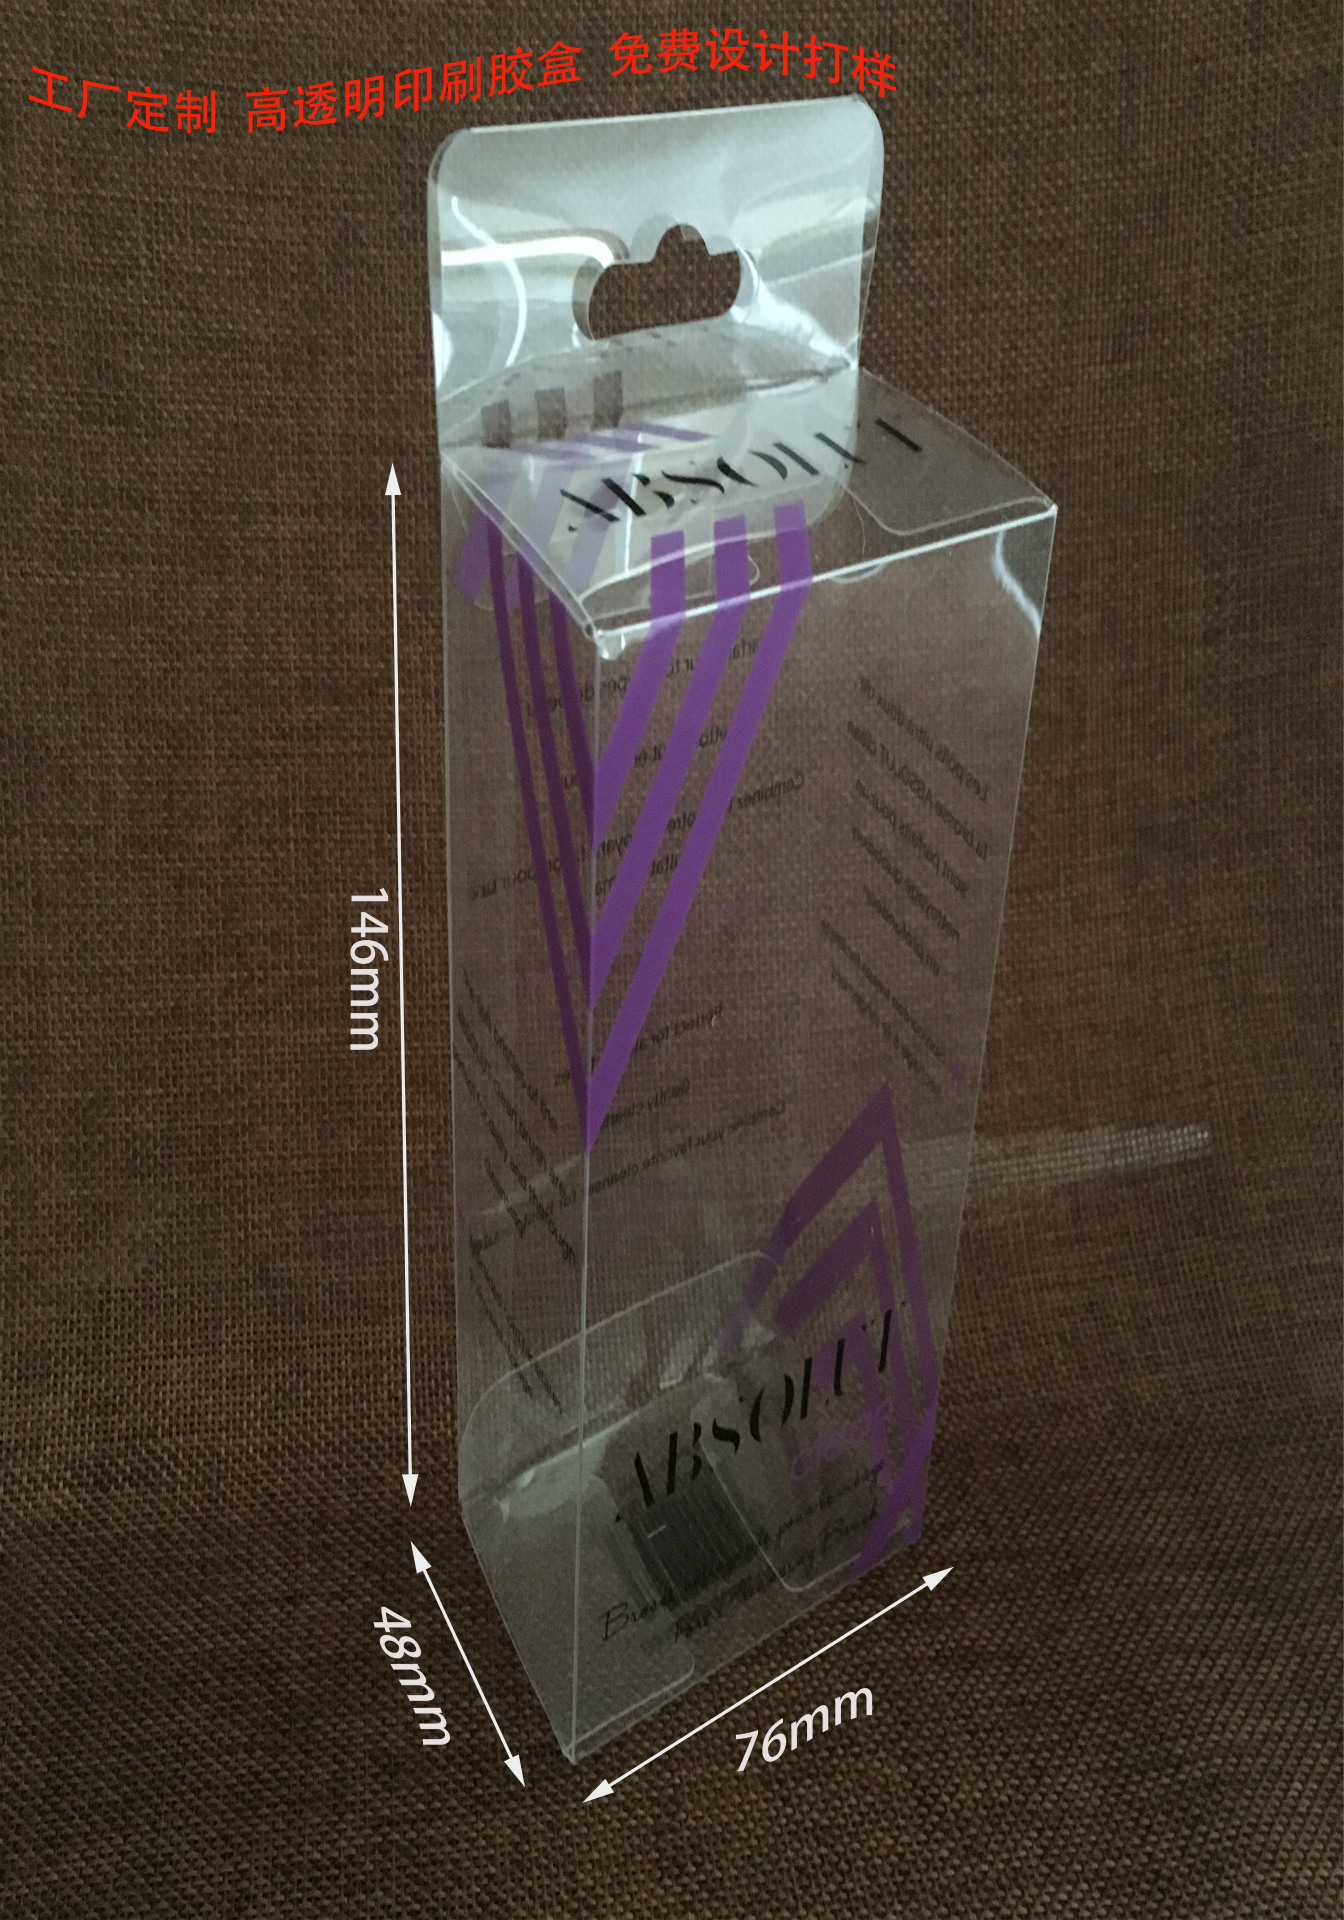 厂家定制PVC包装盒 PET透明塑料盒 PP磨砂盒子 礼品包装彩盒定图片